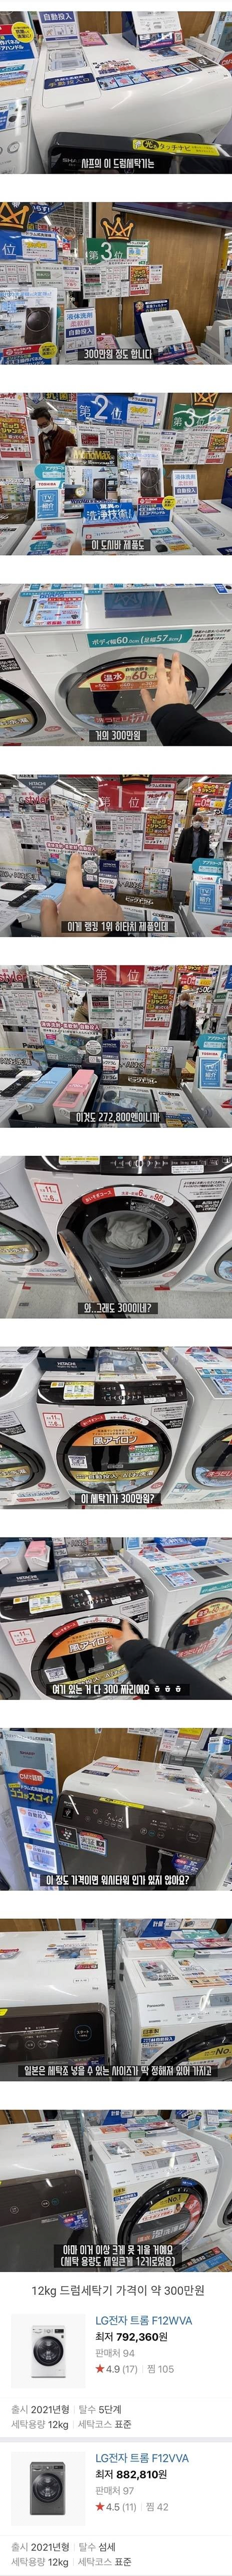 충격적인 일본의 세탁기 가격